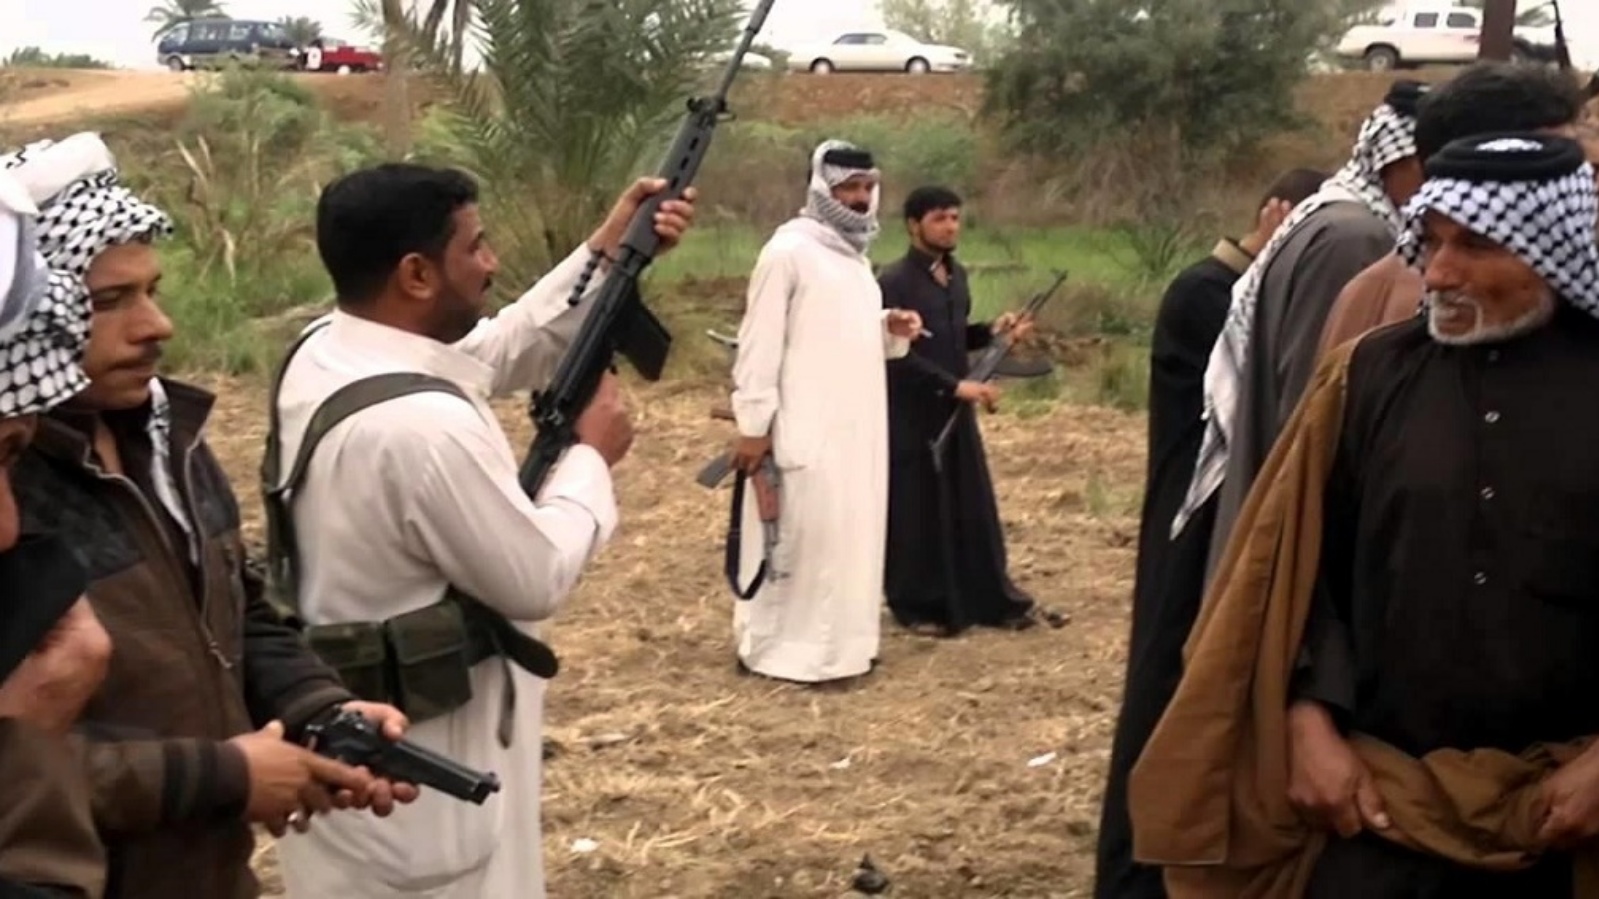 عشائريون عراقيون يطلقون الرصاص خلال اقتتال داخلي (تويتر)